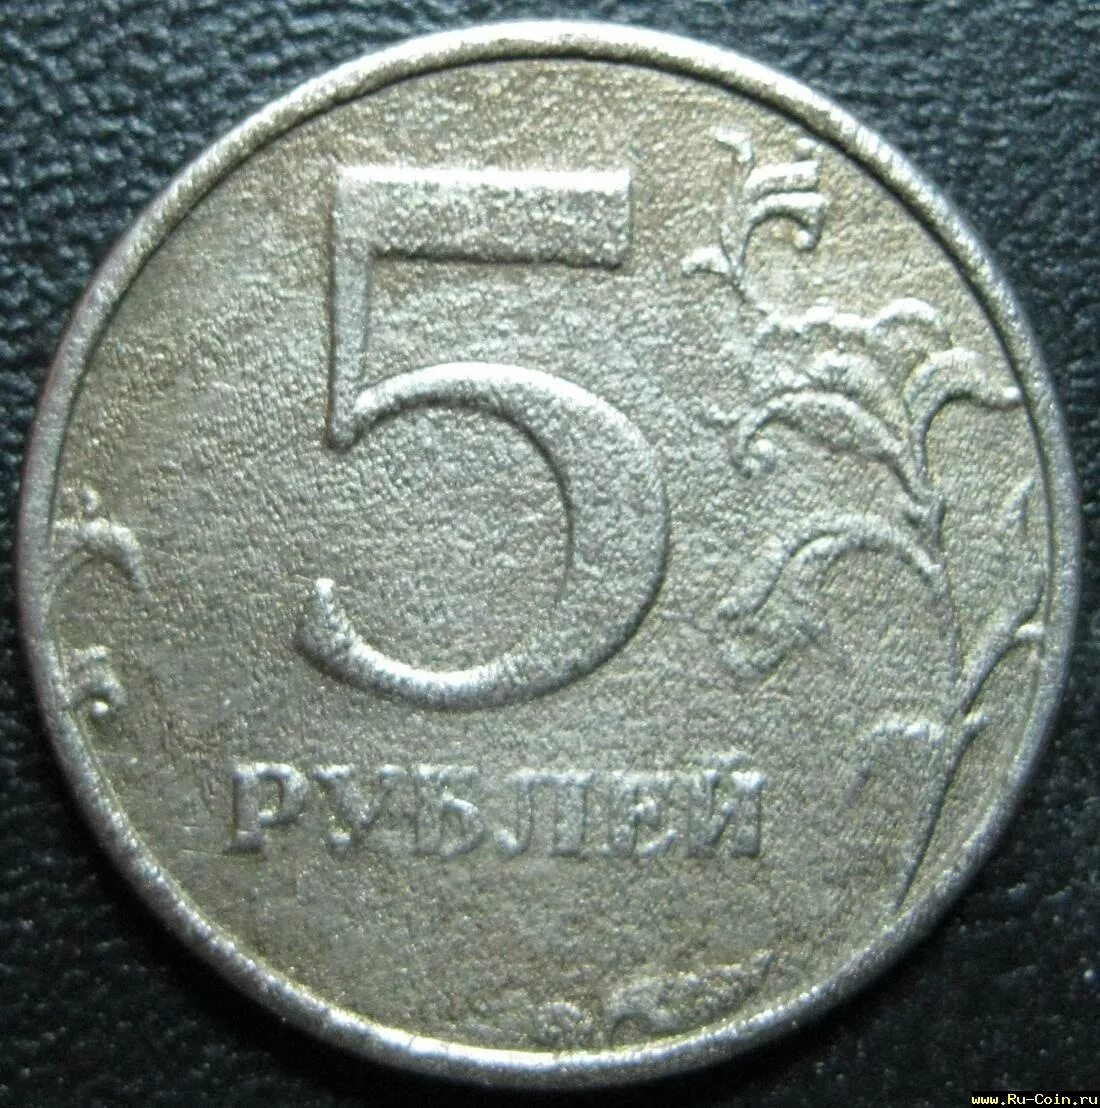 R 5 в рублях. Монета RUU. Ru Coin net. Car Coin ru u,j.